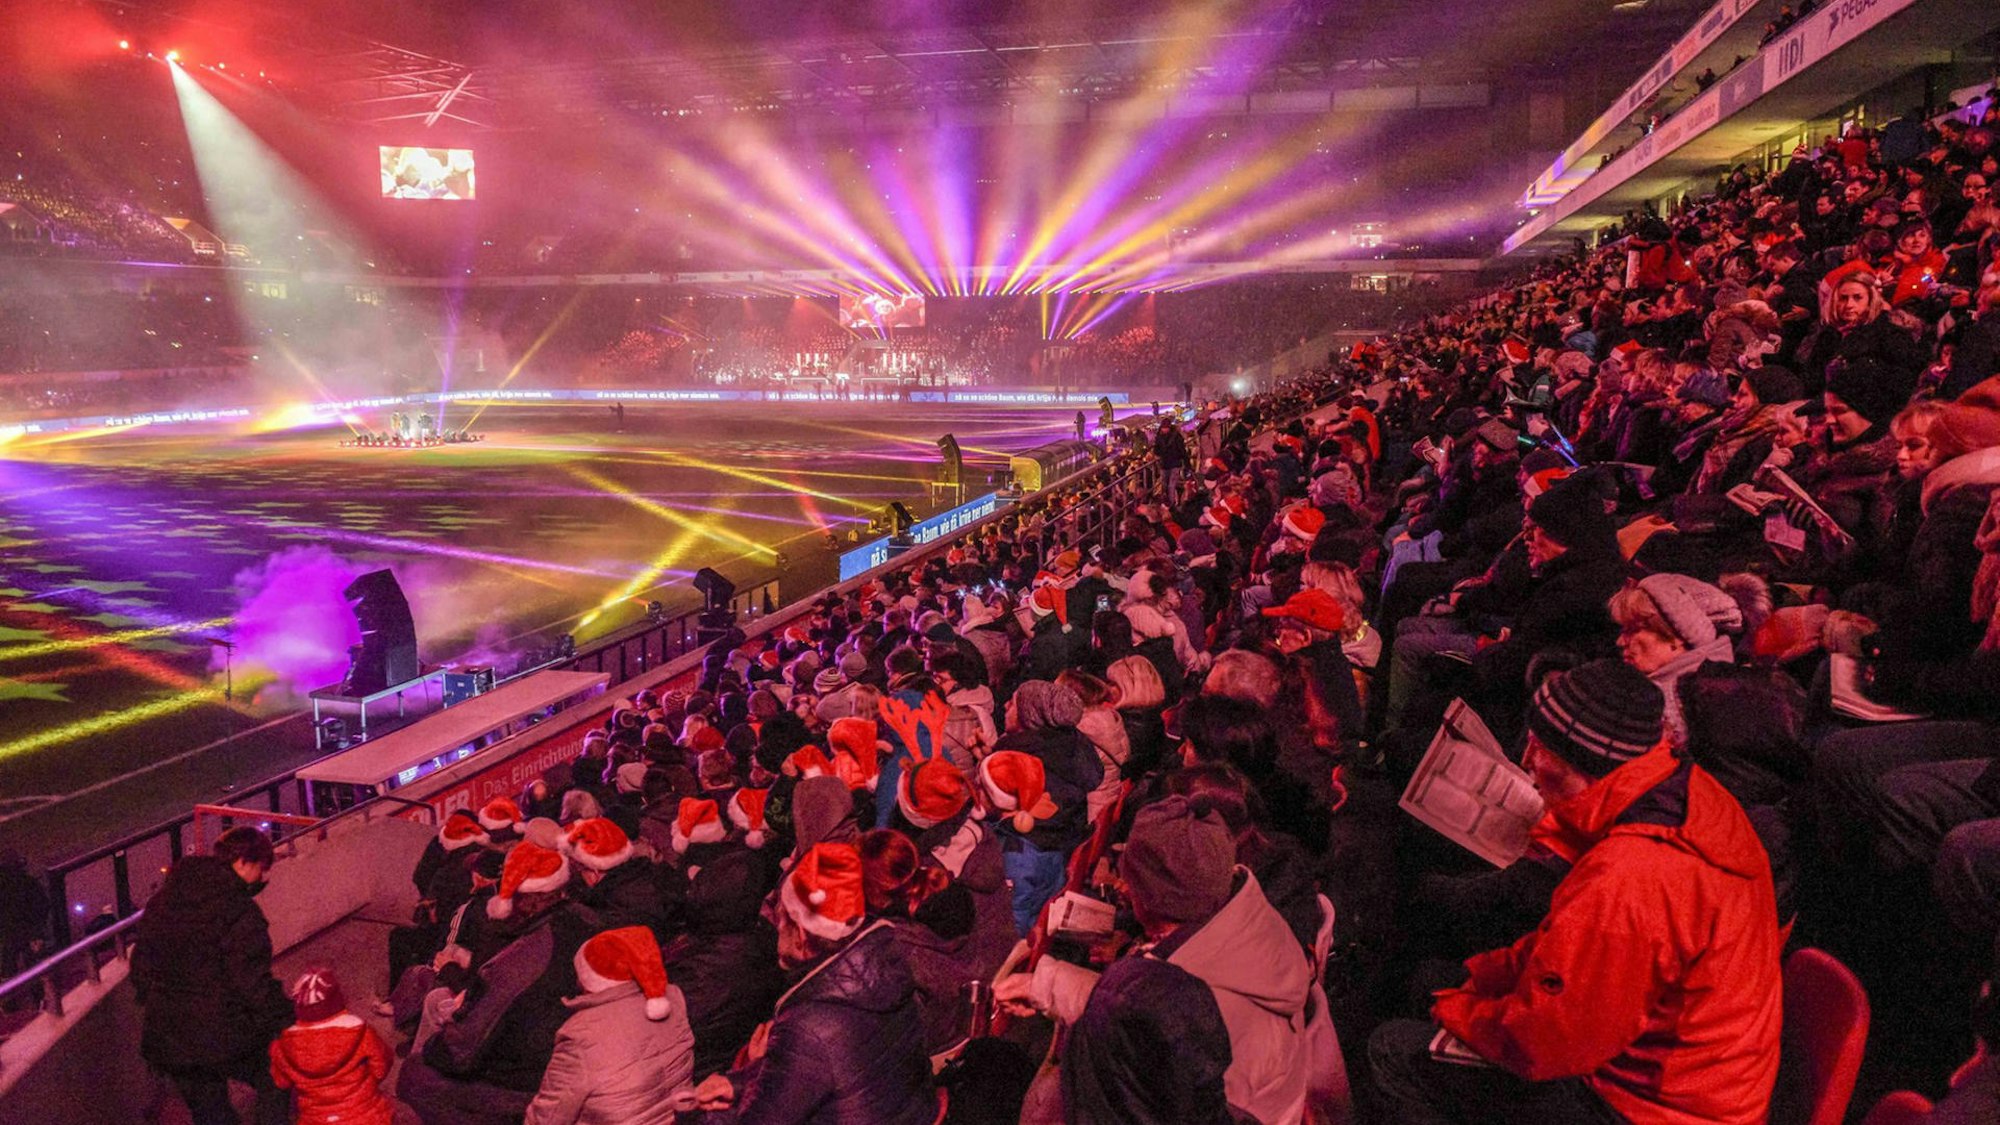 Von der Tribüne des Rhein-Energie-Stadion schauen Tausende Menschen, viele mit Weihnachtsmannmützen auf dem Kopf, auf eine bunt erleuchtete Stadionfläche.